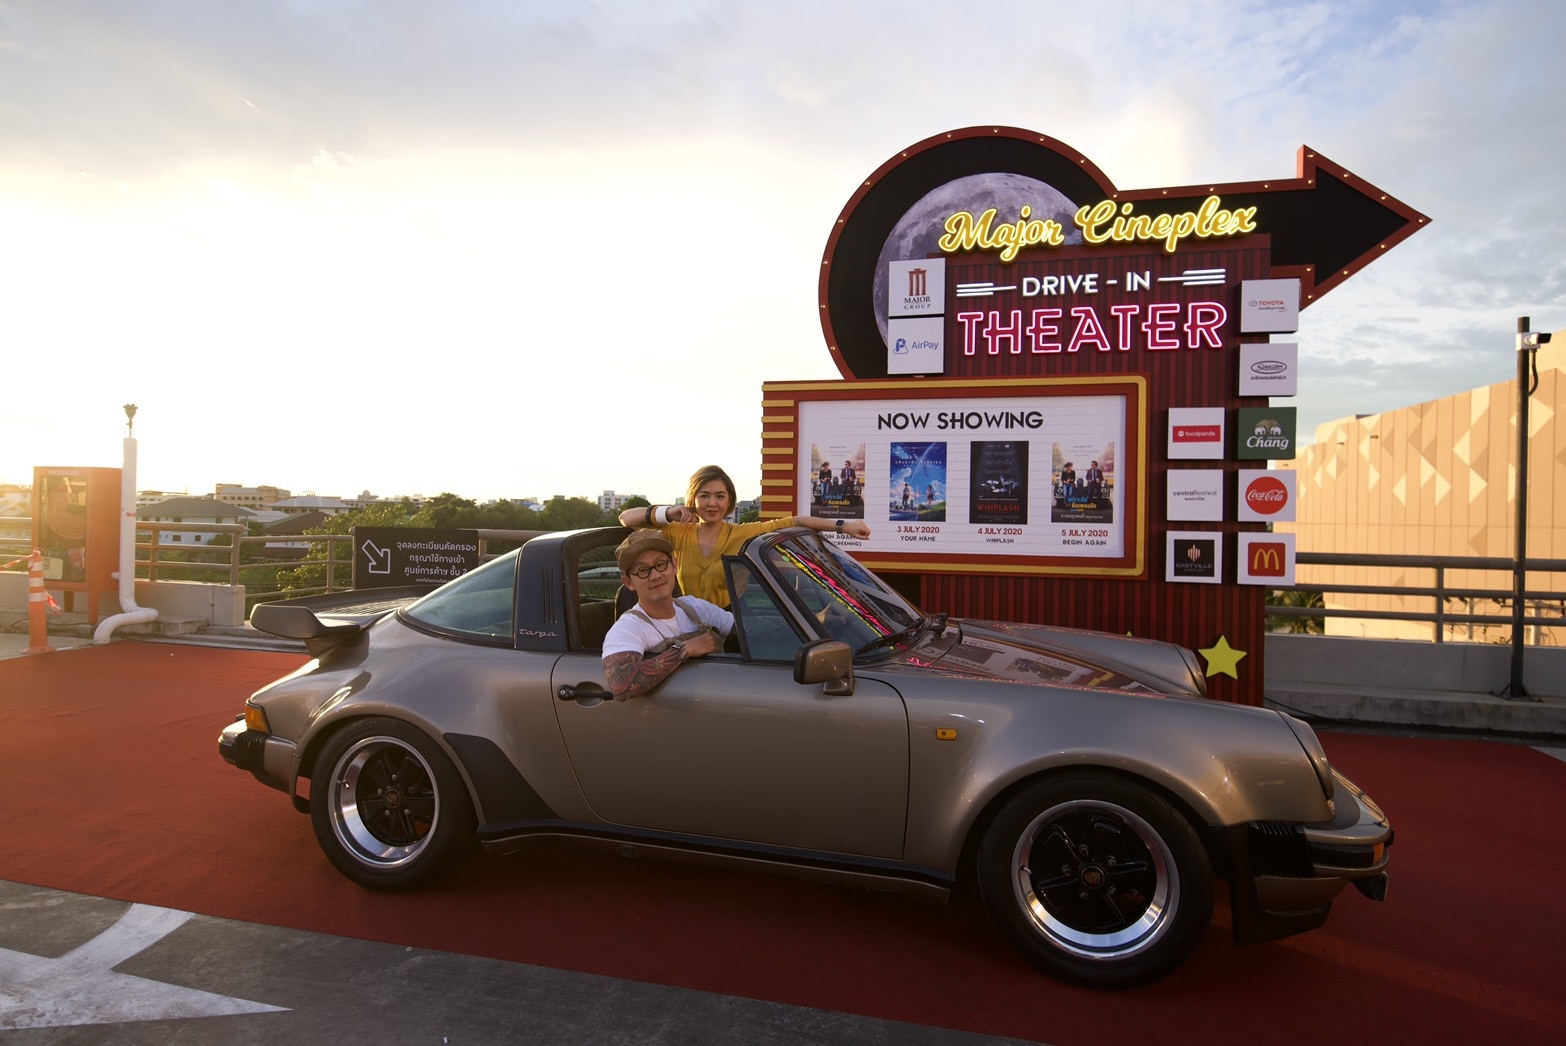 เมเจอร์ ร่วมกับ แอร์เพย์ จัดงาน Major Cineplex Drive-In Theater @CentralFestival EastVille ครั้งแรกในประเทศไทย! กับงาน Drive-In Theater